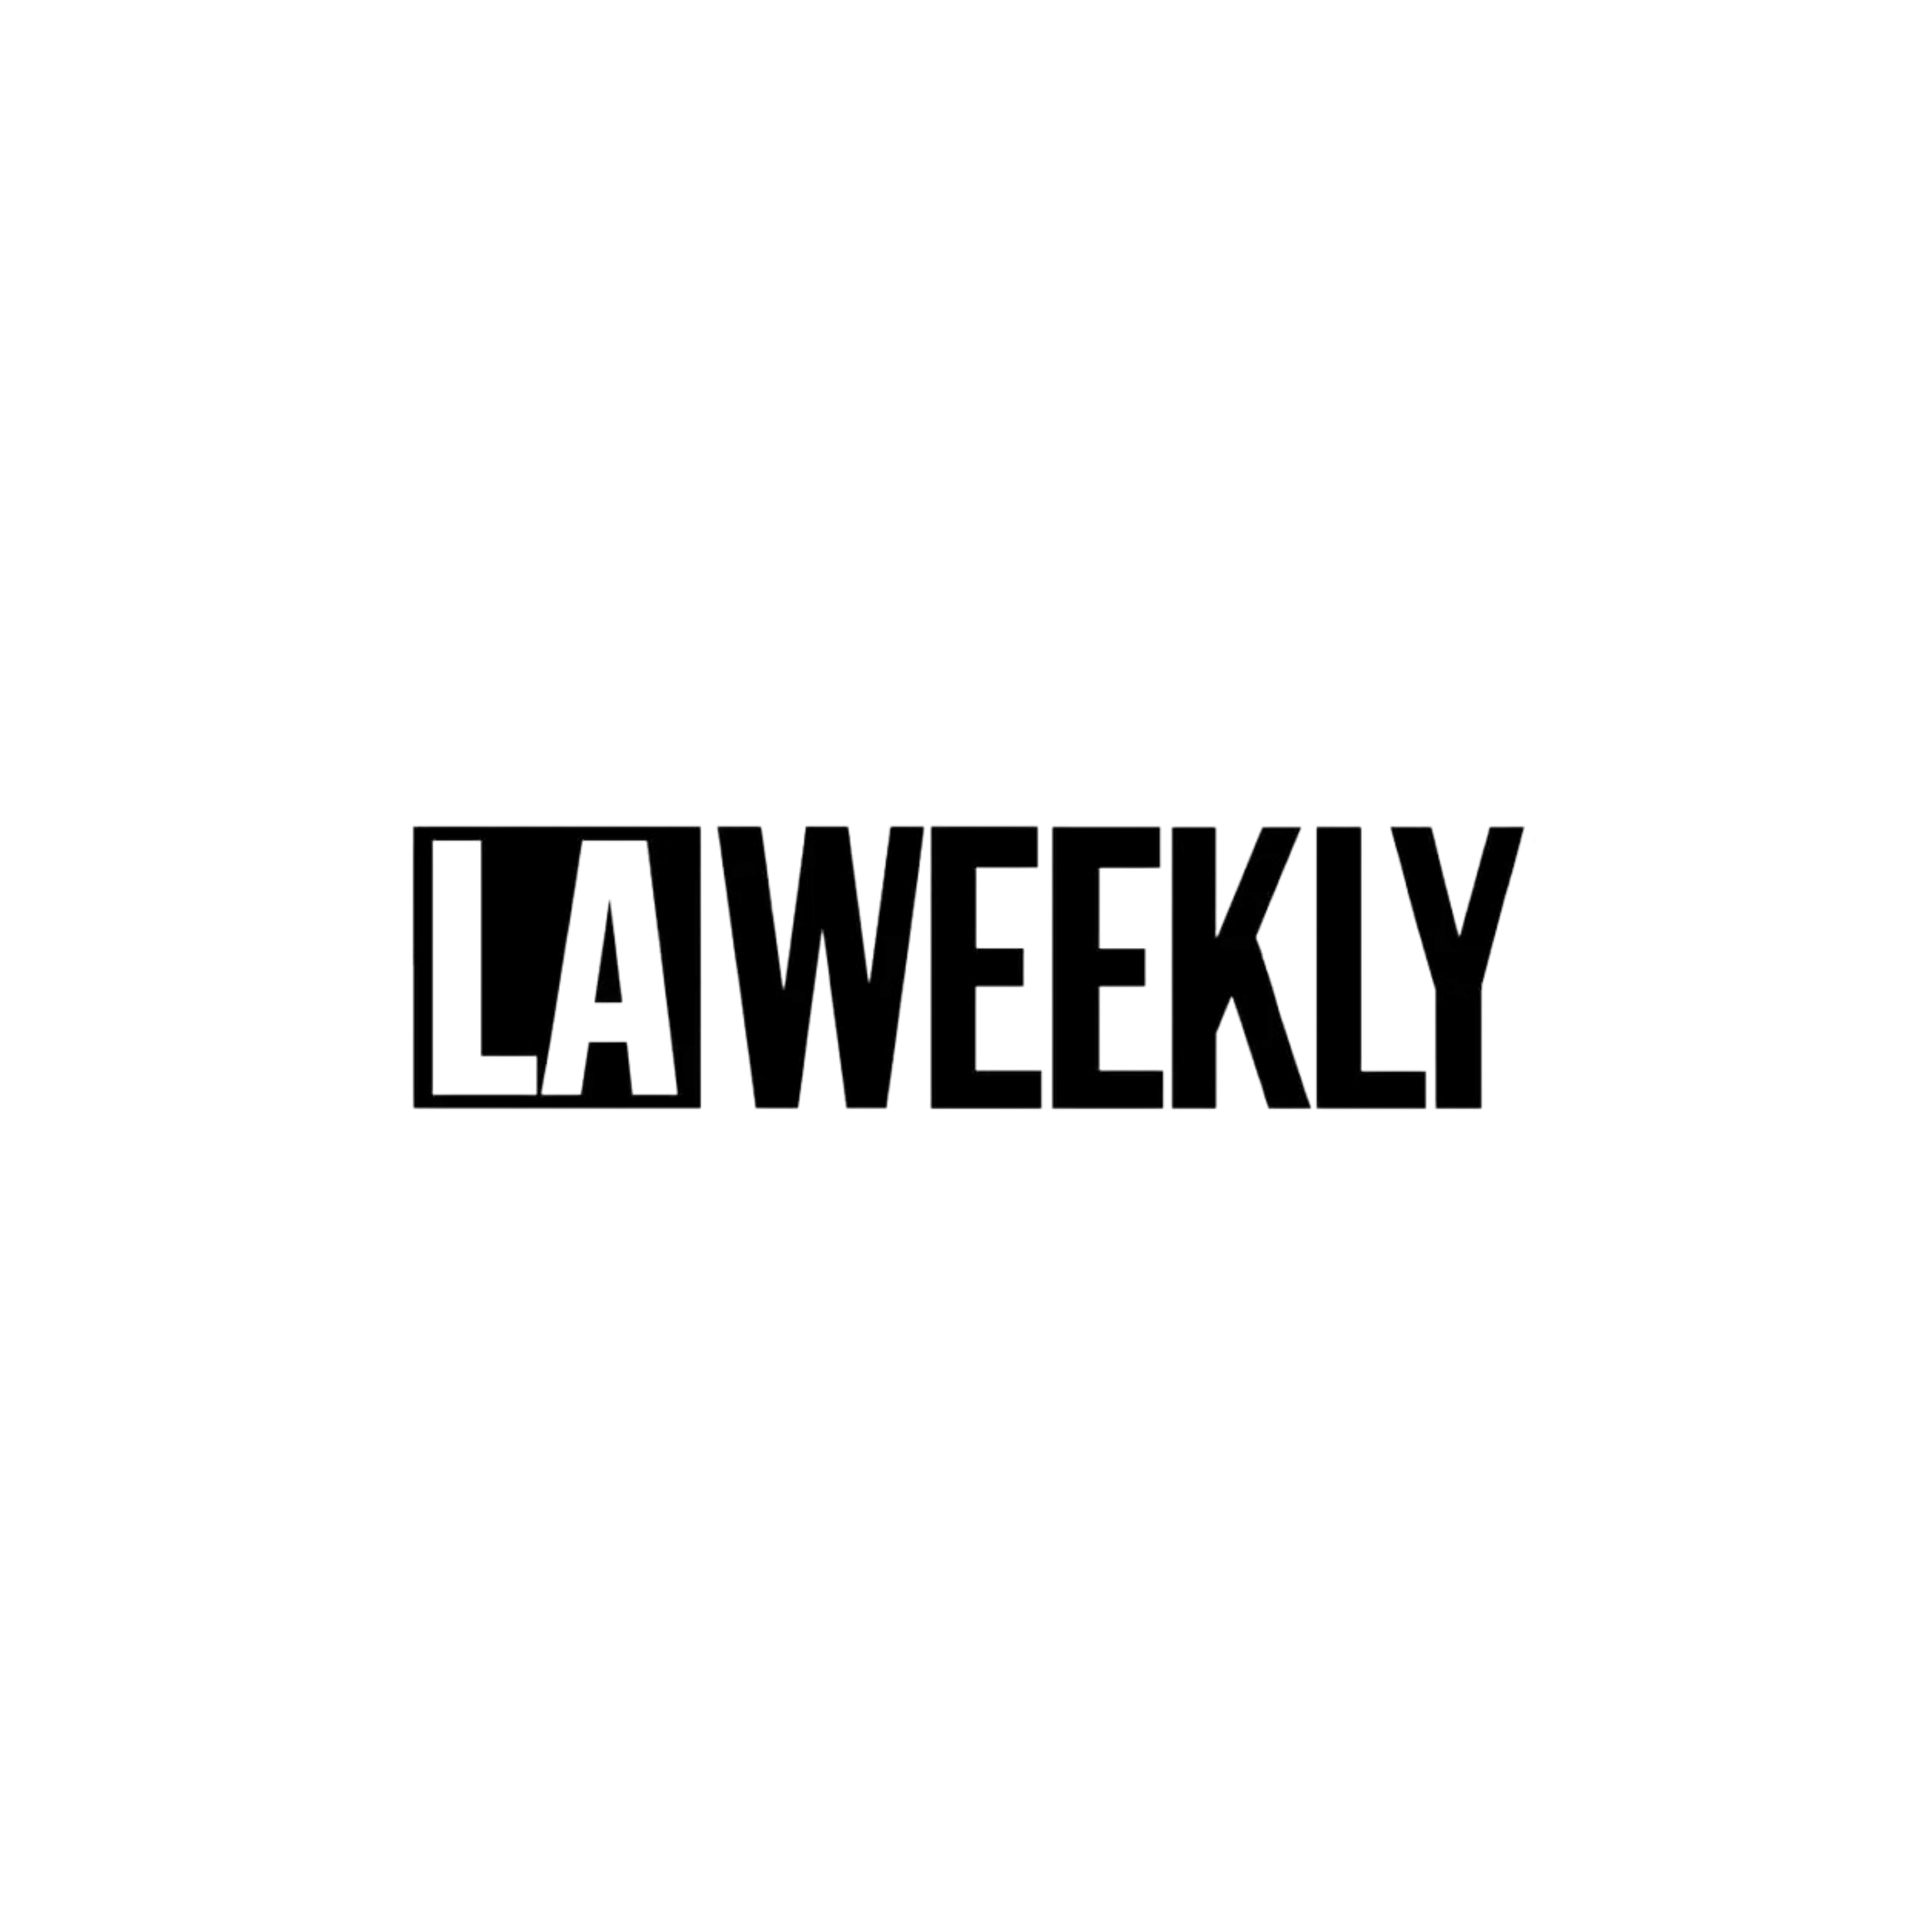 LAWeekly logo